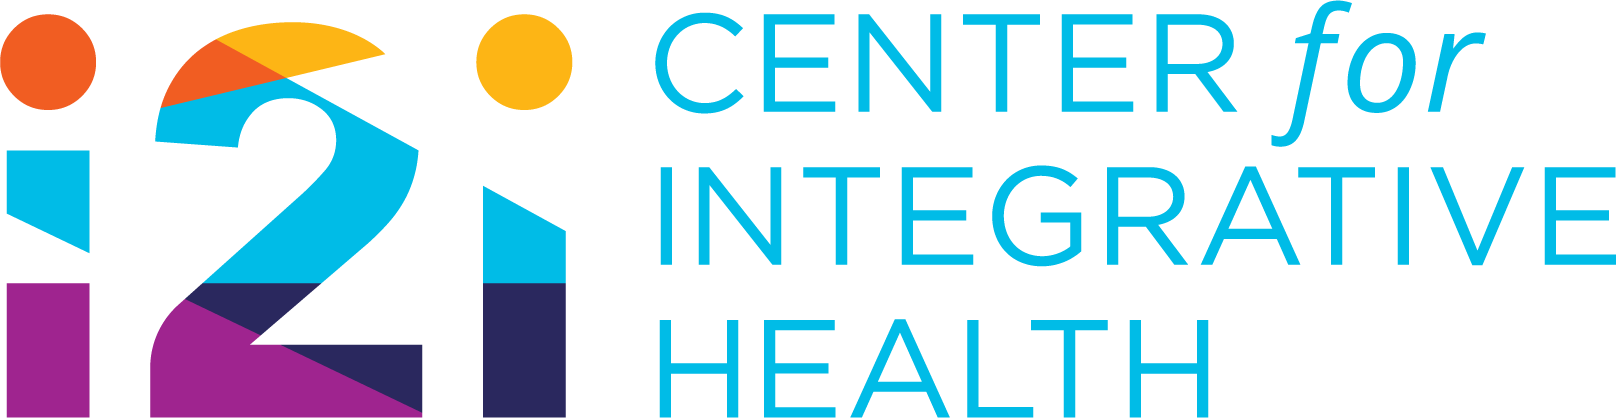 i2i center for integrative health logo